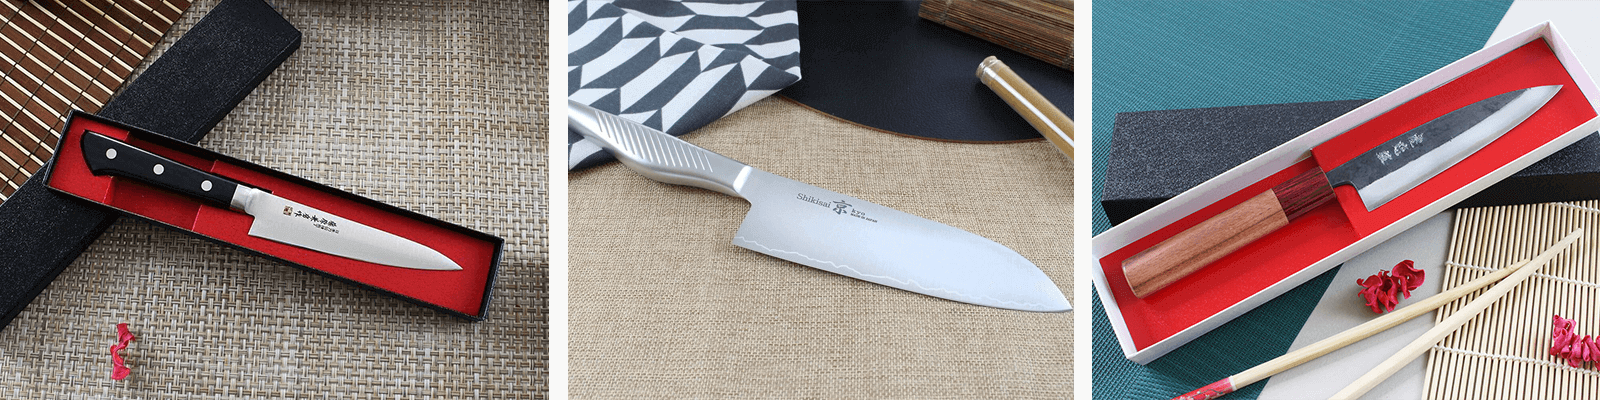 Découvrez comment choisir son couteau japonais grâce à l'équipe